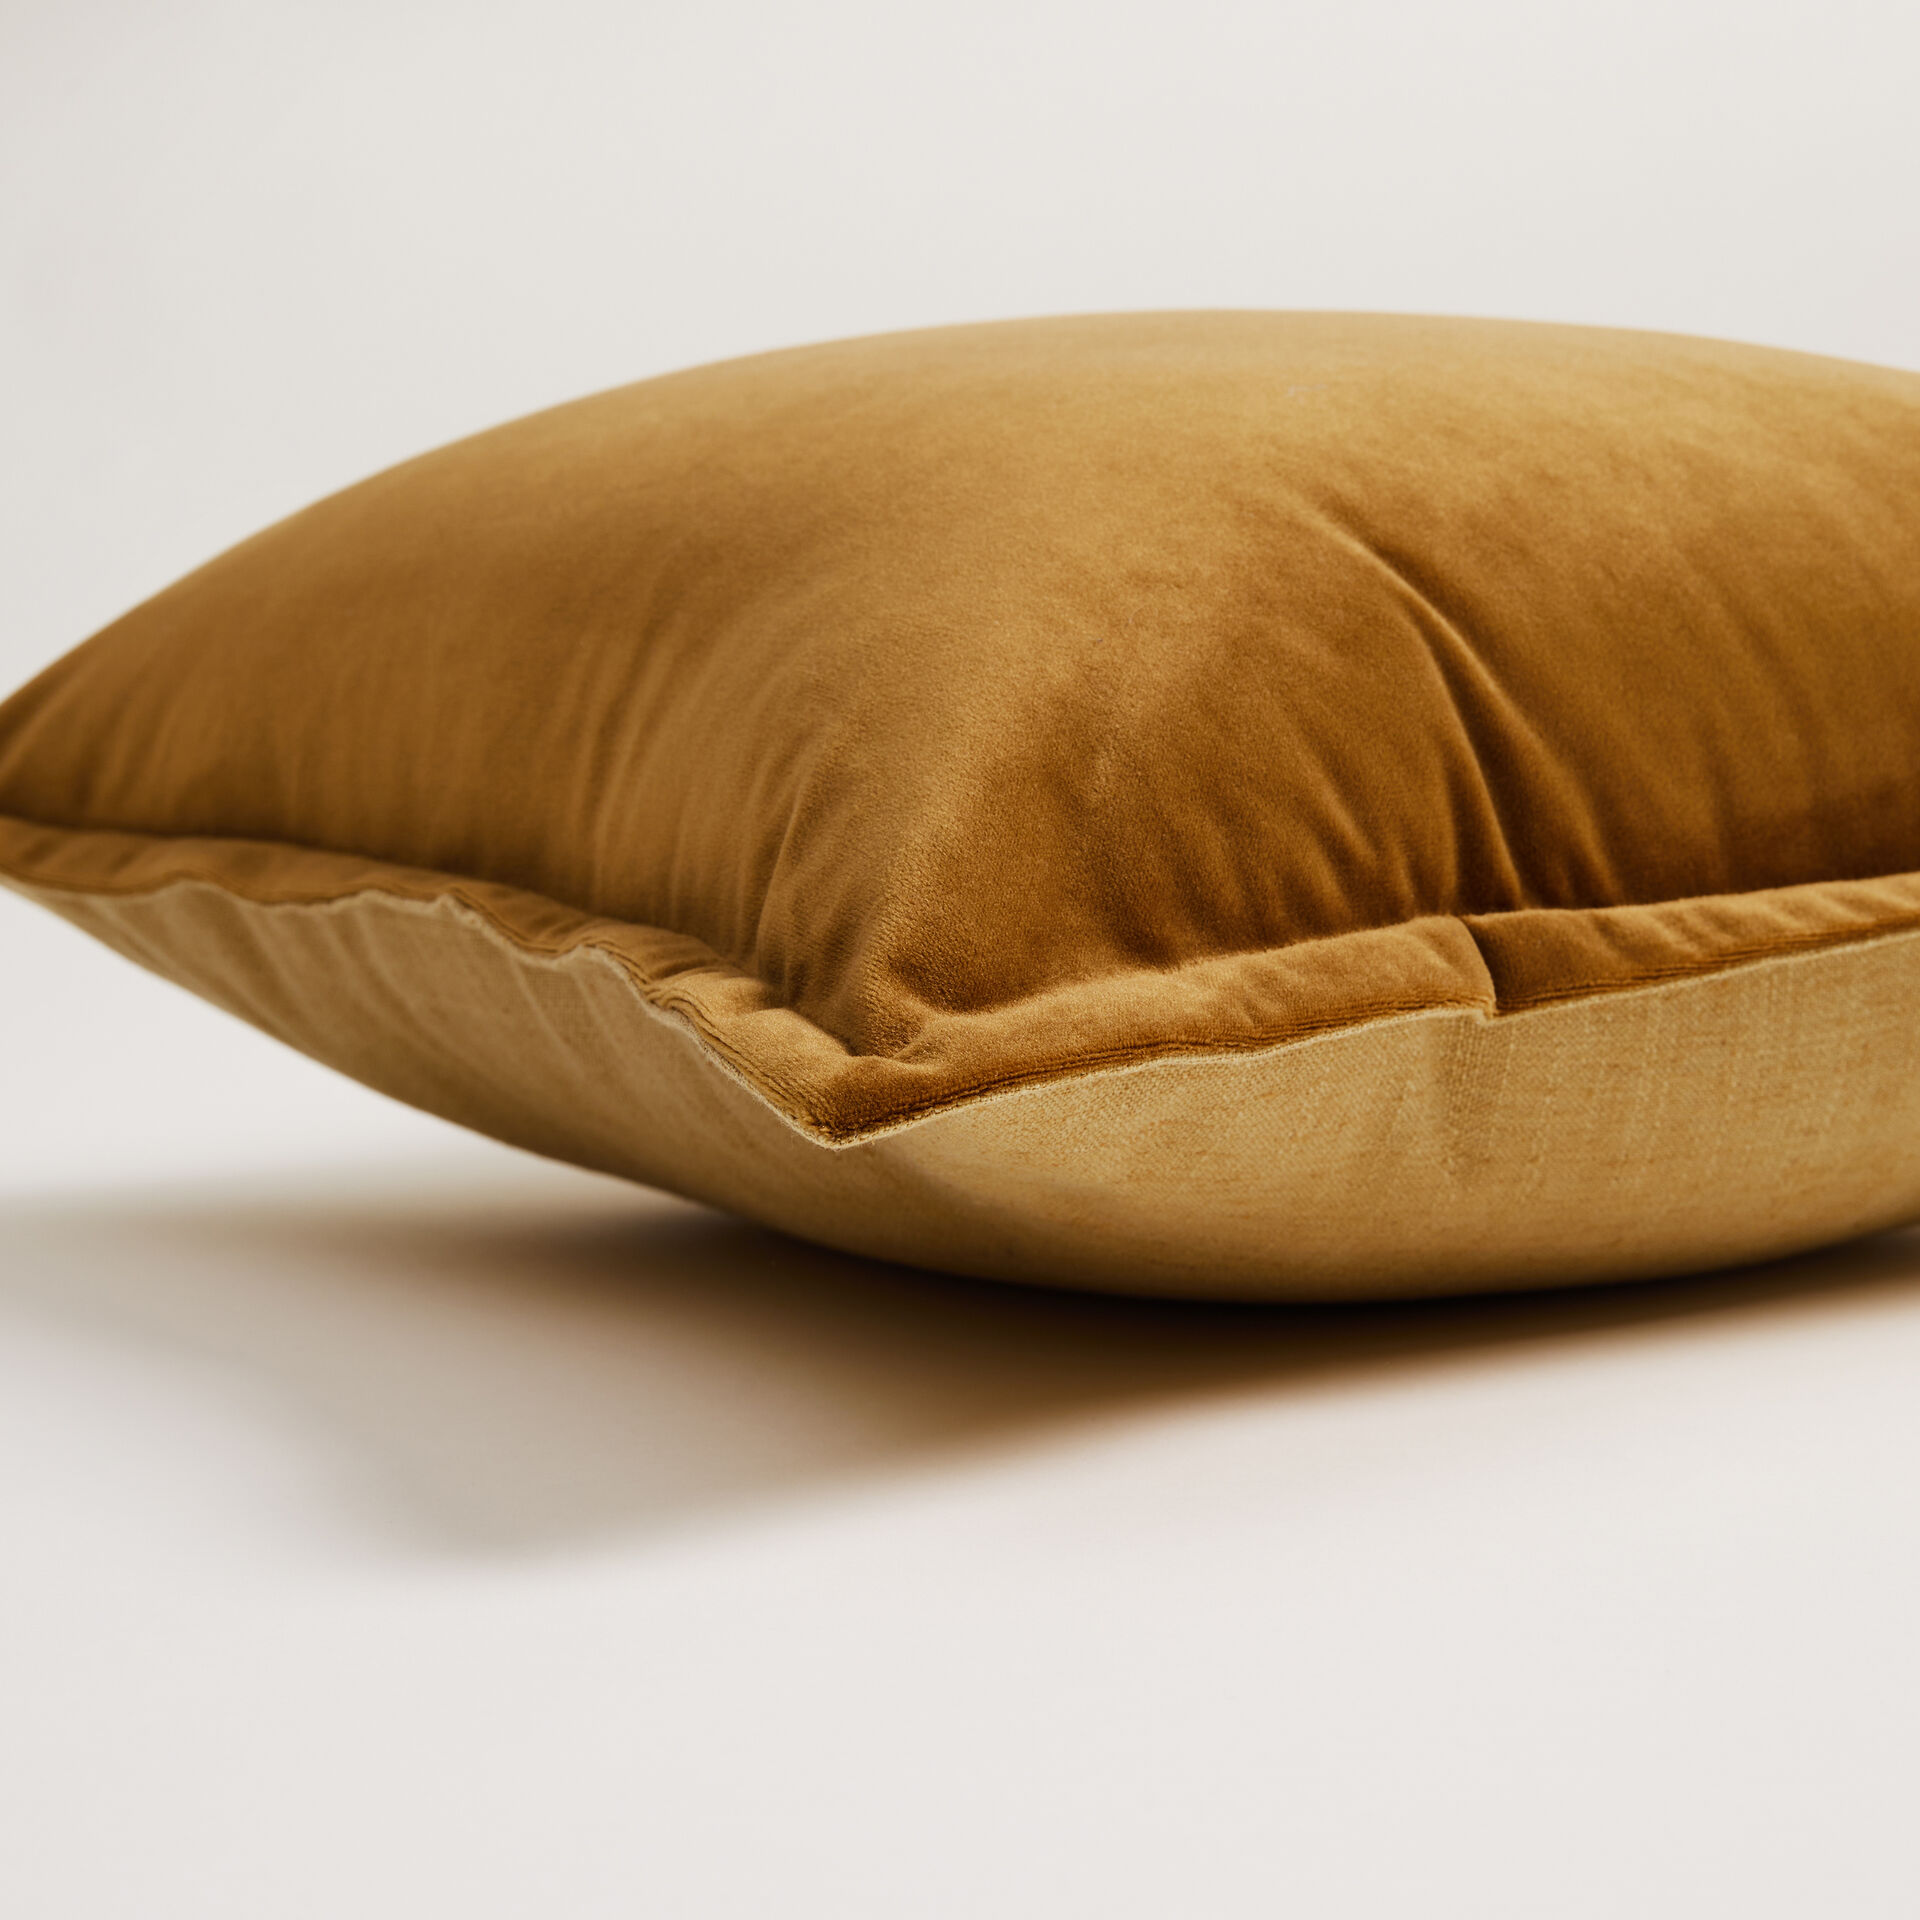 Velvet Reversible Cushion